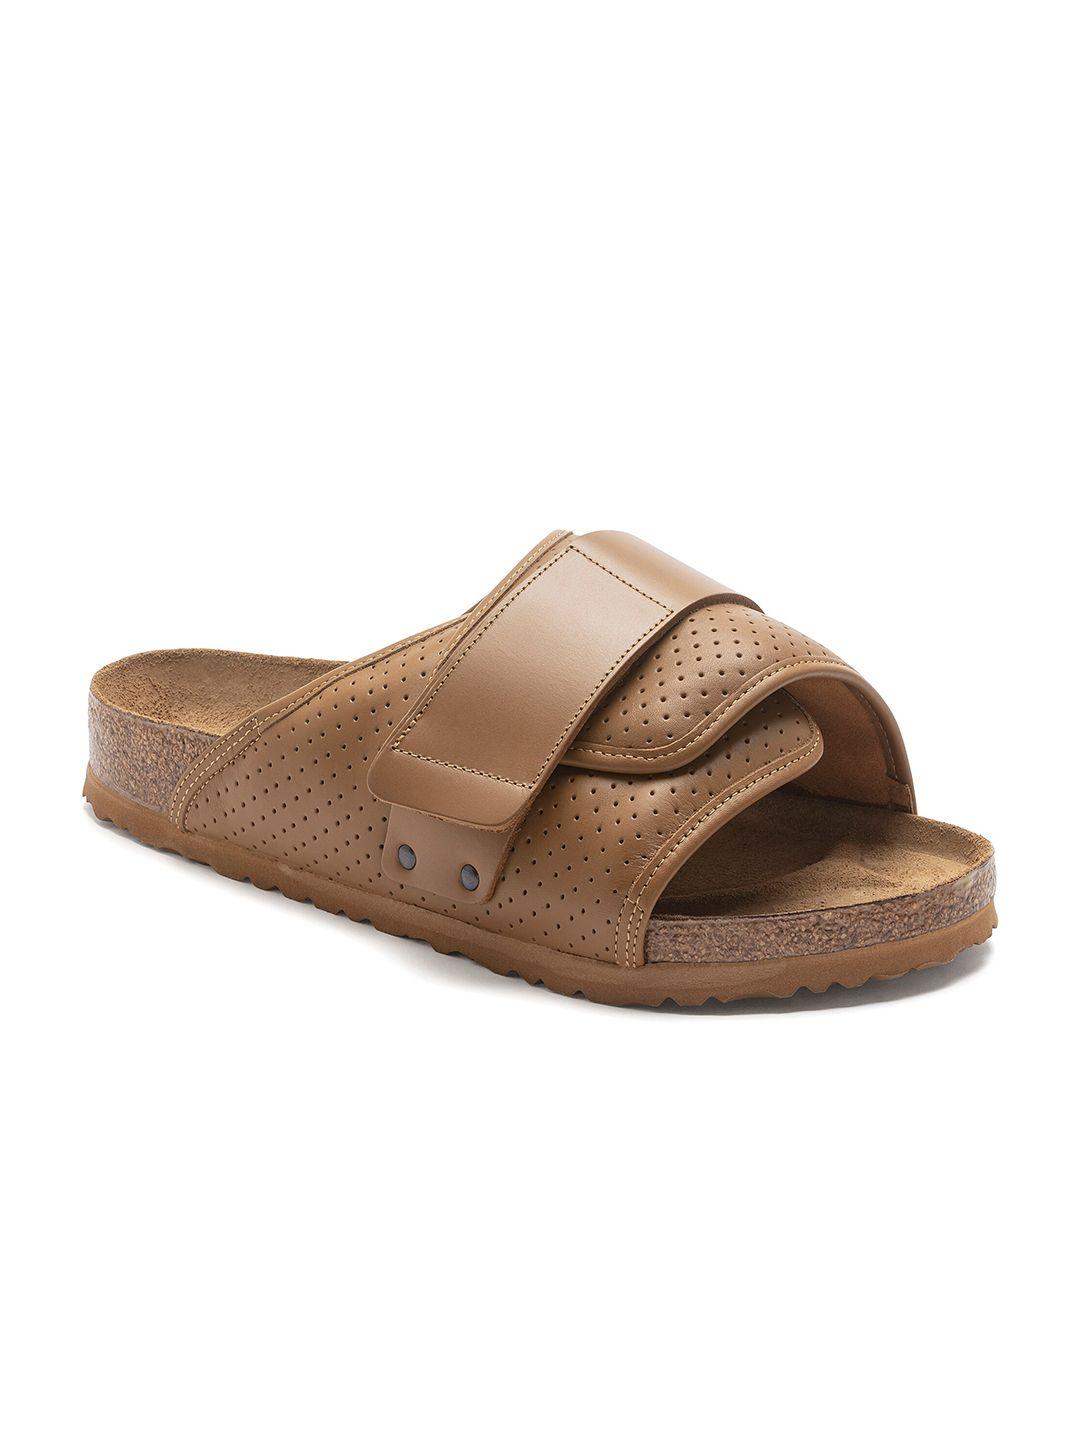 birkenstock-men-kyoto-narrow-width-one-strap-comfort-sandals